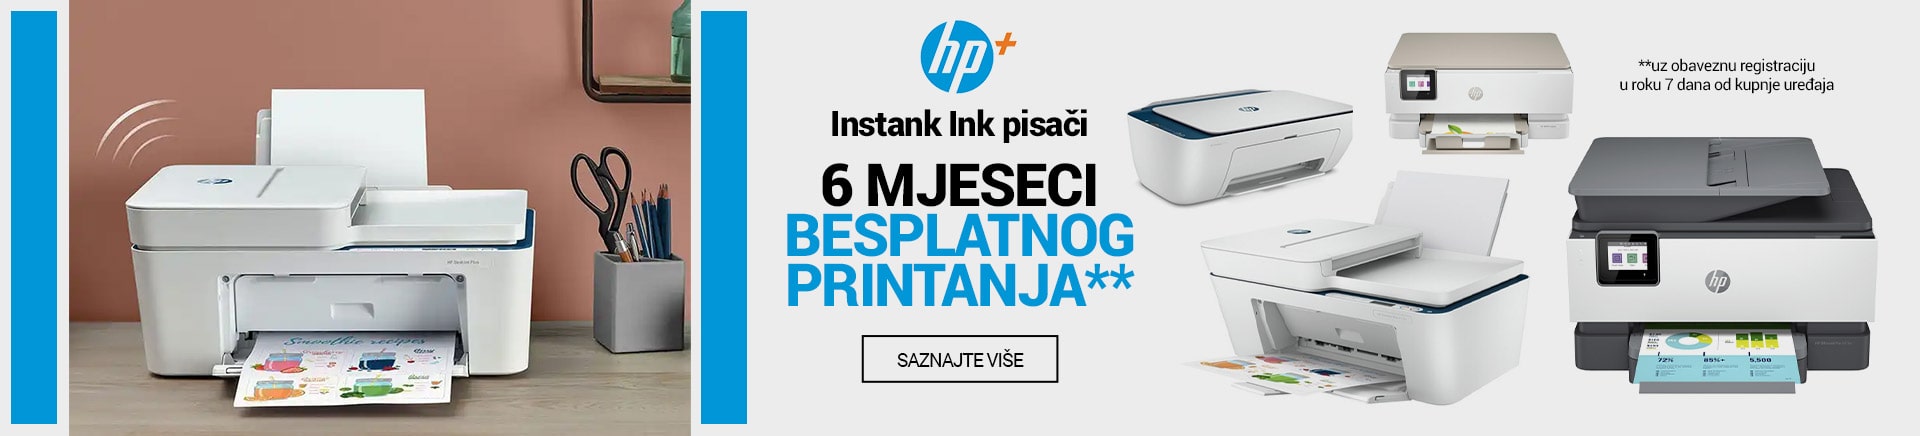 HP instank ink pisači 6 mjeseci besplatnog printanja